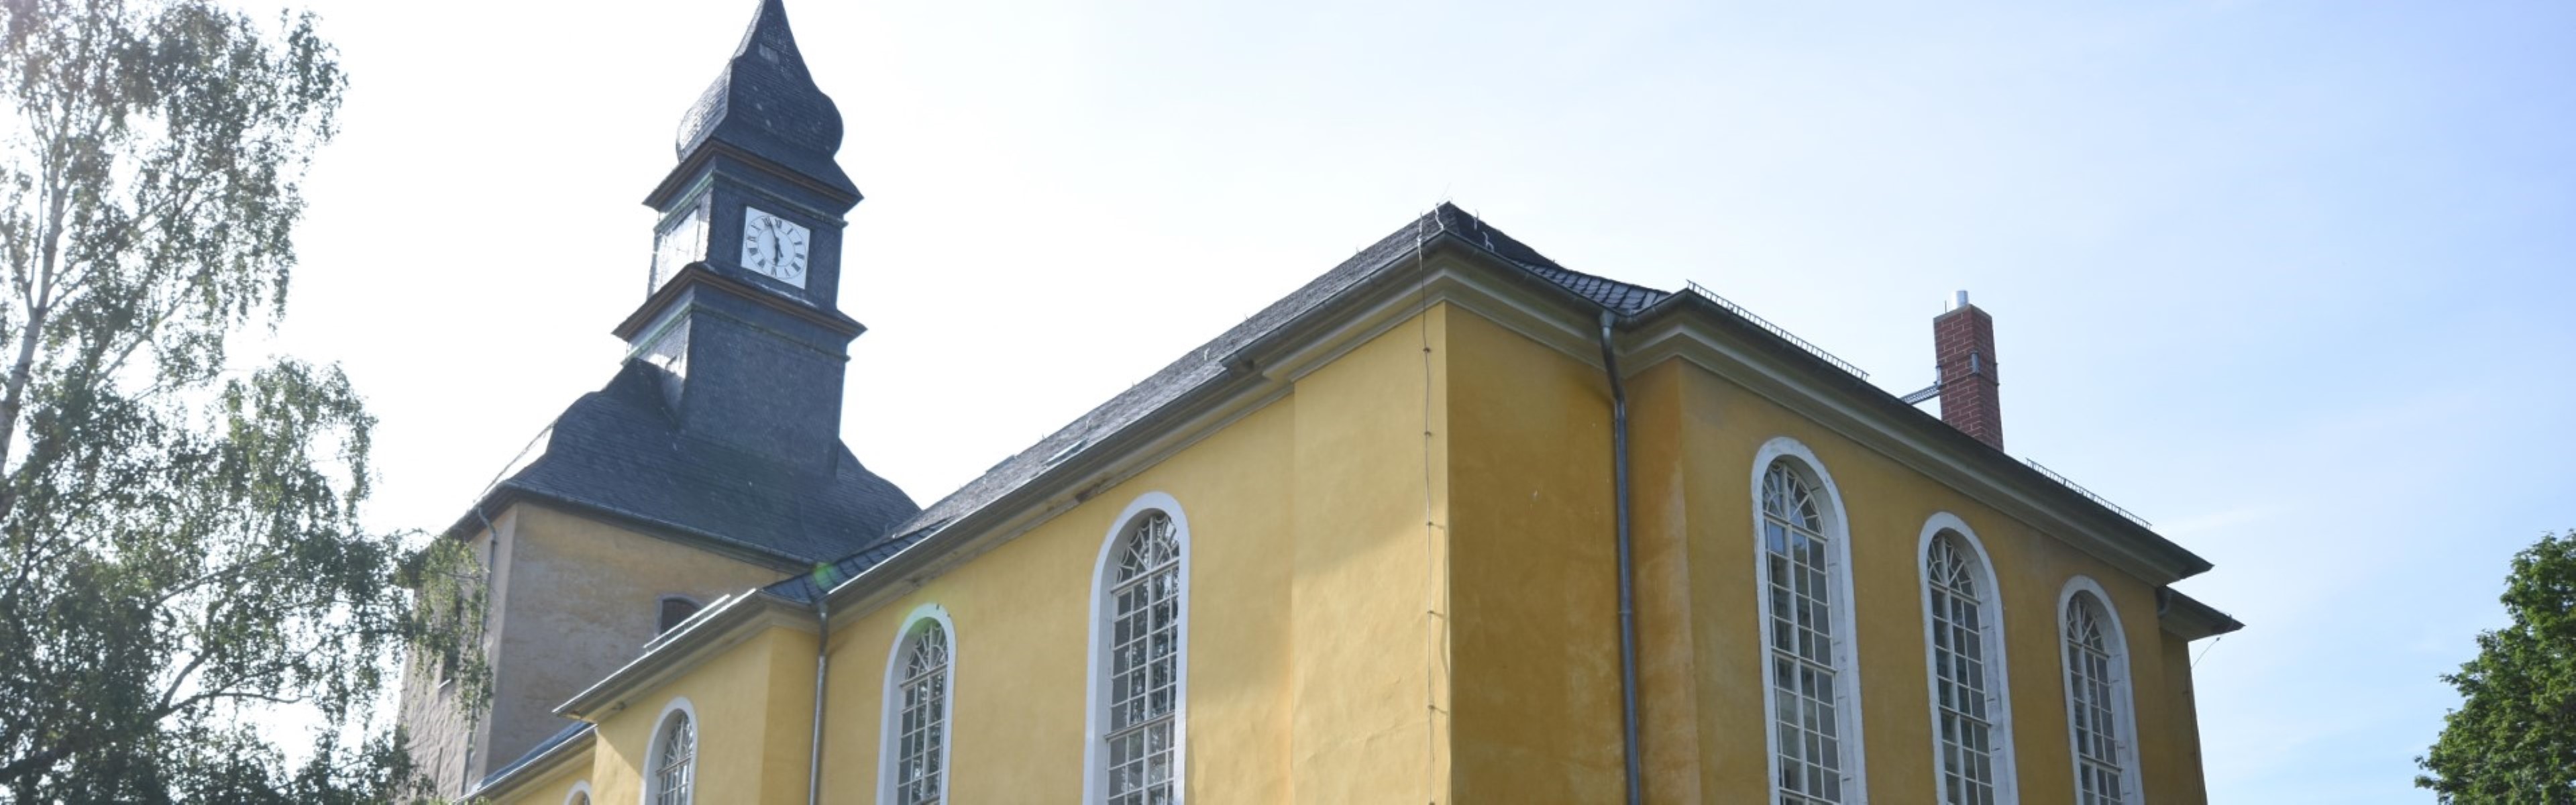 Kirche Pappendorf